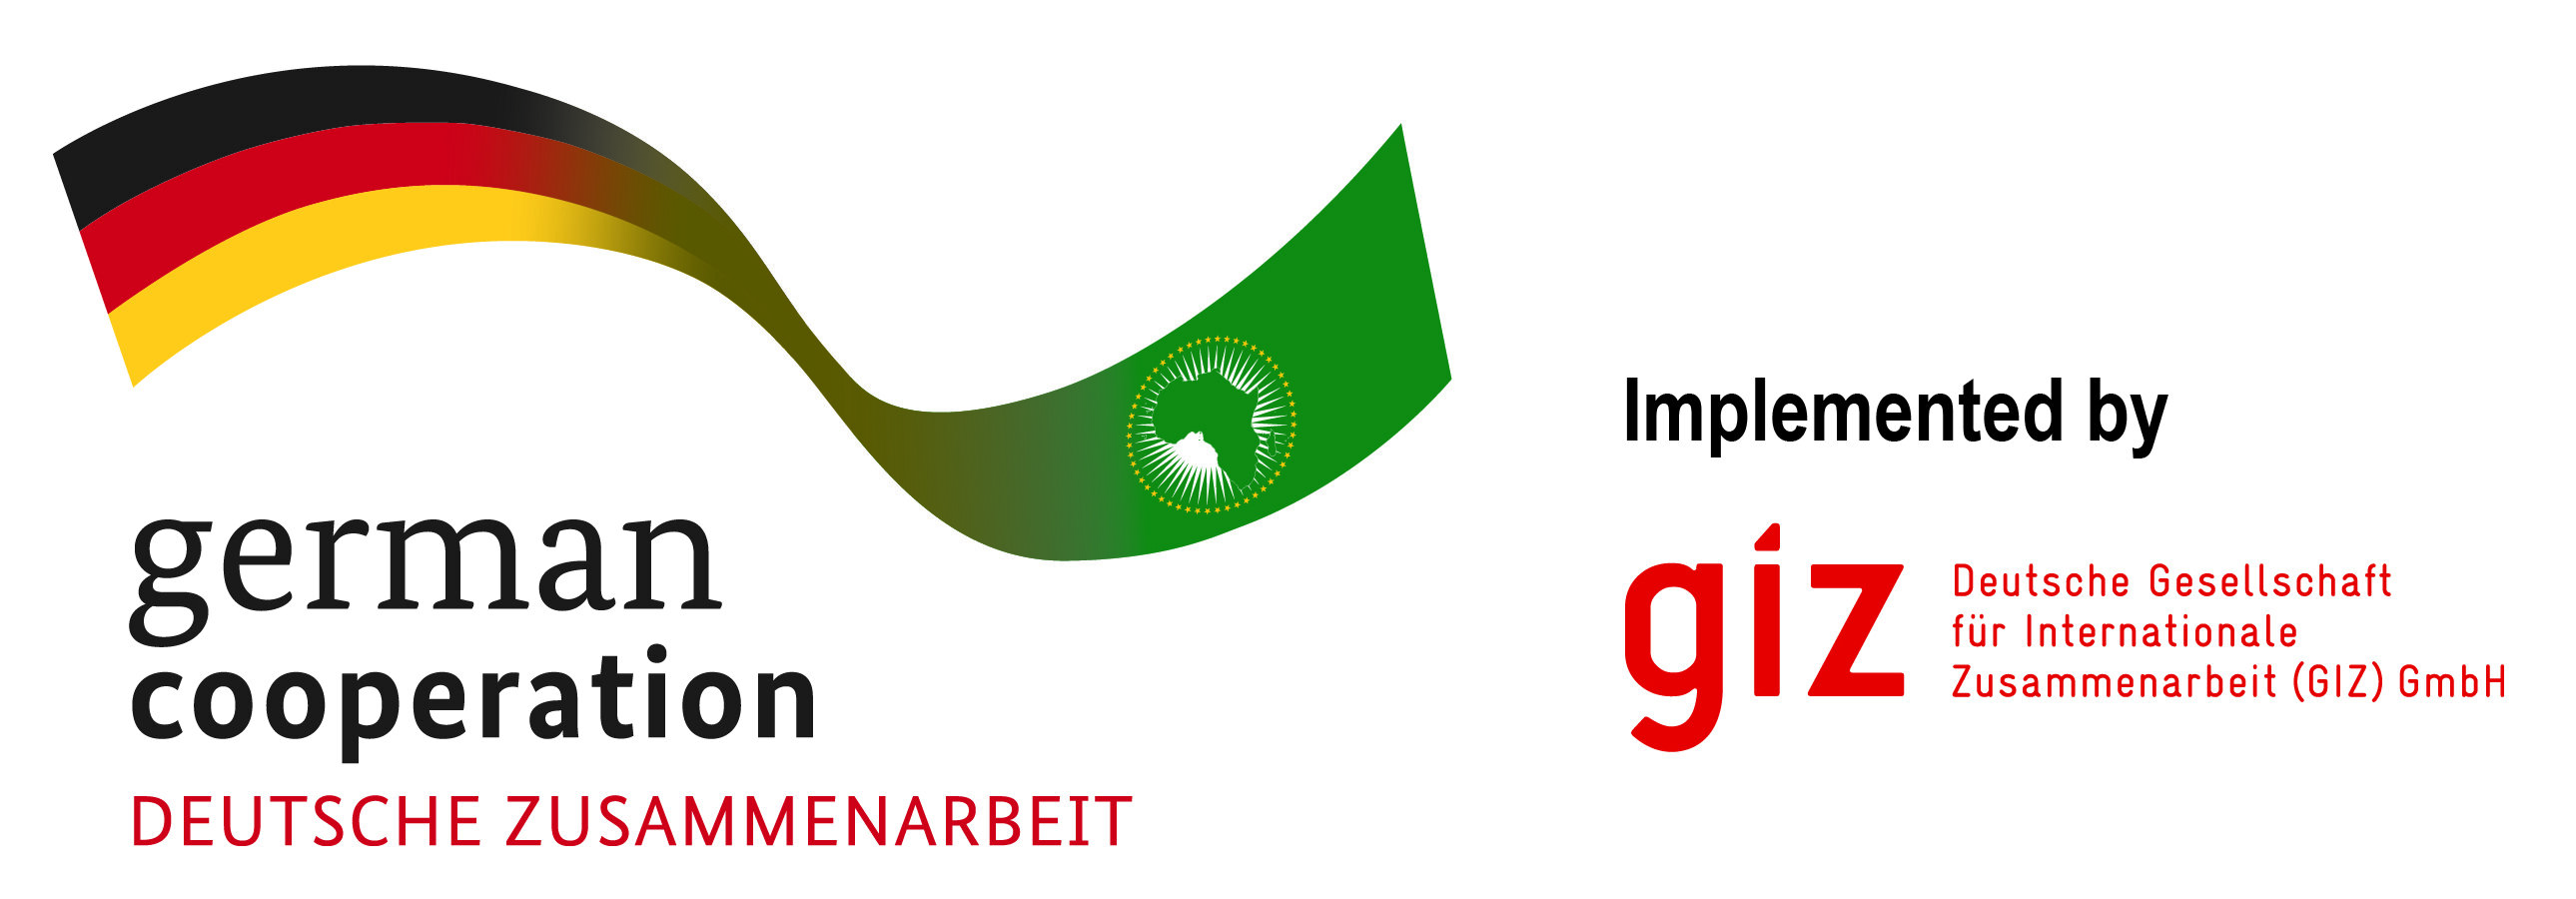 Image: logo of GIZ